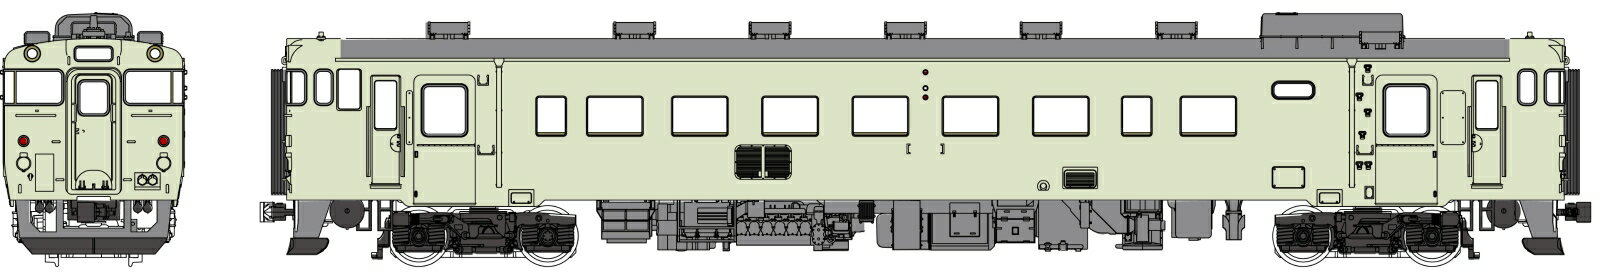 キハ40-100代クリーム10号、動力付 【TW-K40-100EM】 (鉄道模型 HOゲージ)